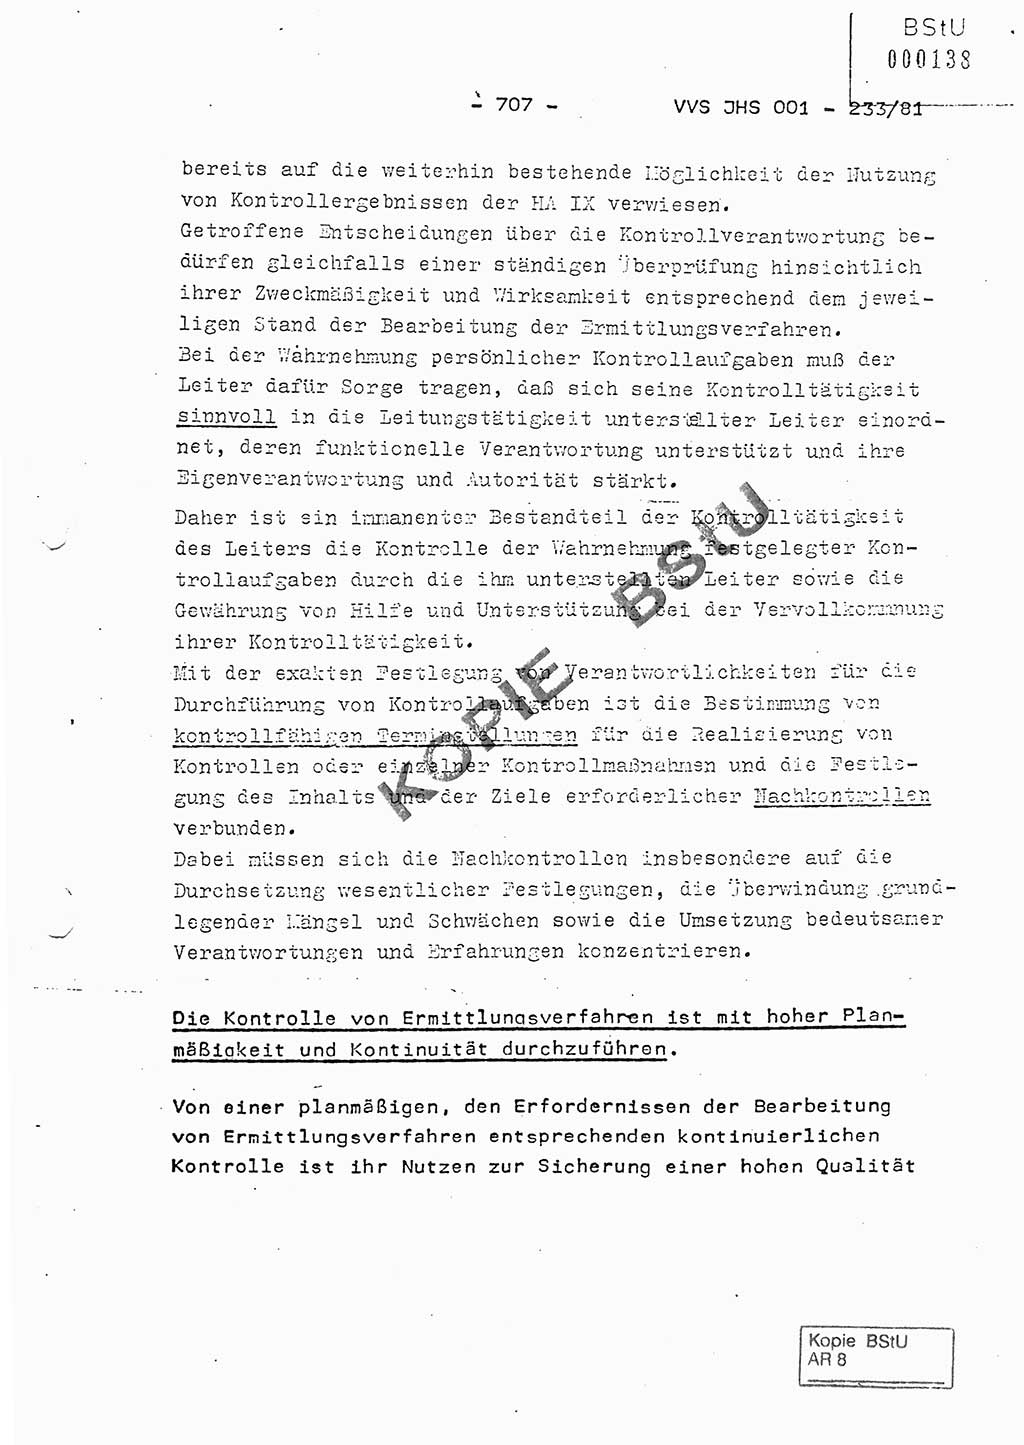 Dissertation Oberstleutnant Horst Zank (JHS), Oberstleutnant Dr. Karl-Heinz Knoblauch (JHS), Oberstleutnant Gustav-Adolf Kowalewski (HA Ⅸ), Oberstleutnant Wolfgang Plötner (HA Ⅸ), Ministerium für Staatssicherheit (MfS) [Deutsche Demokratische Republik (DDR)], Juristische Hochschule (JHS), Vertrauliche Verschlußsache (VVS) o001-233/81, Potsdam 1981, Blatt 707 (Diss. MfS DDR JHS VVS o001-233/81 1981, Bl. 707)